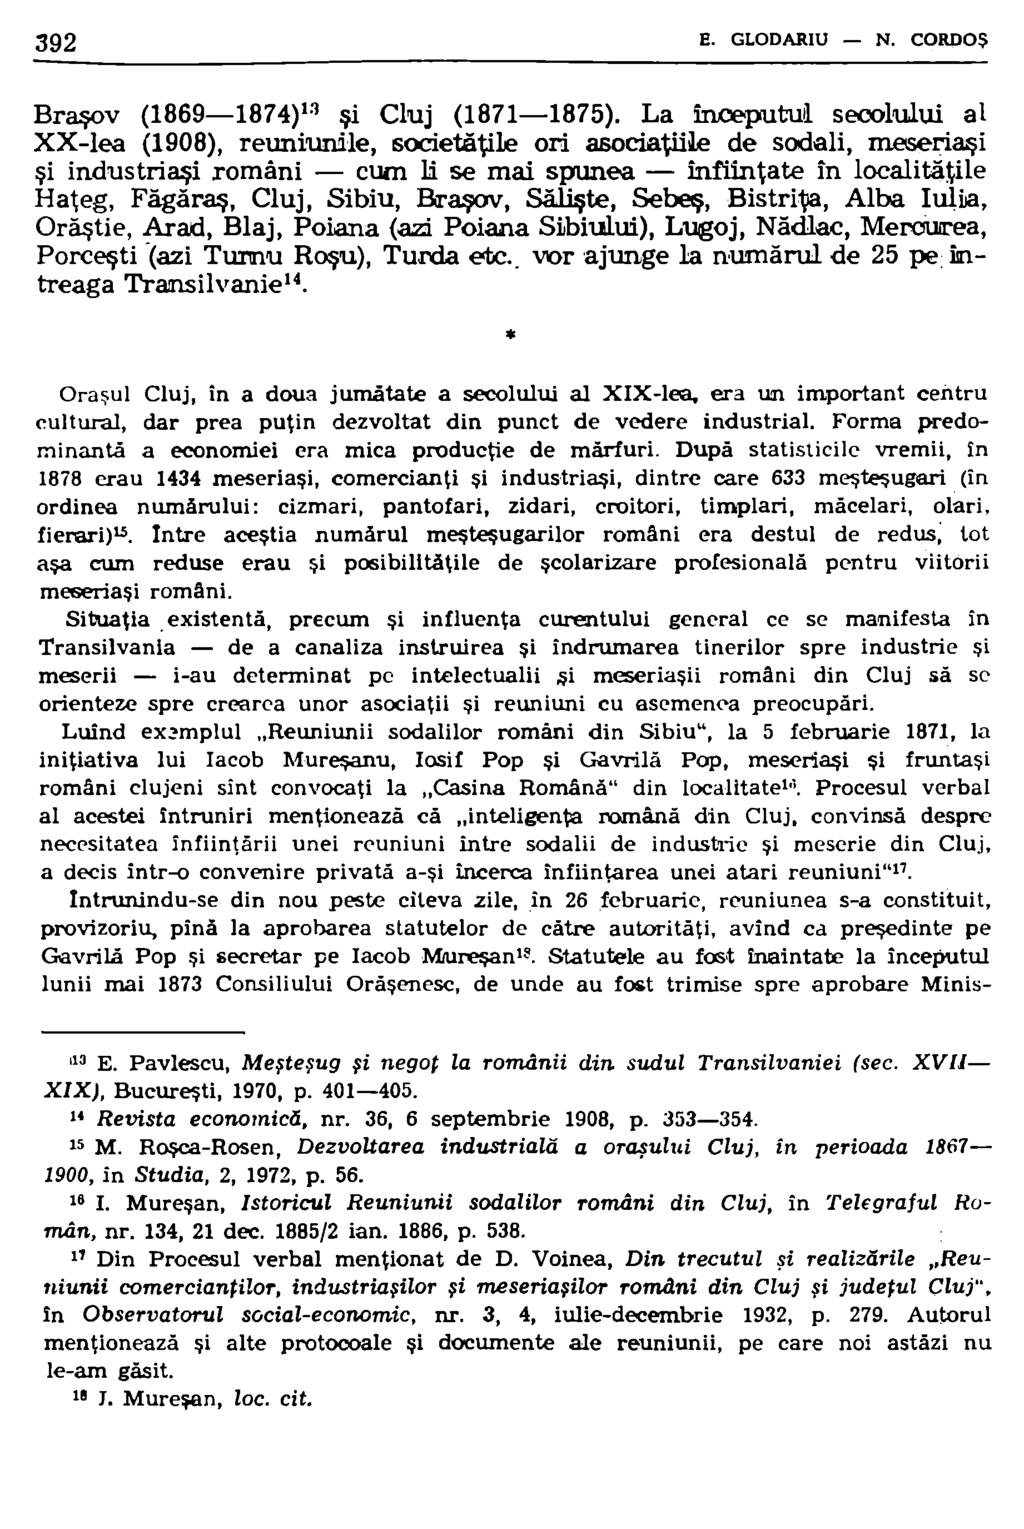 J92 E. GLODARIU - N. CORDOŞ Braşov {1869-1874) 1!1 şi Cluj {1871-1875). La inceputu~ secoluj.ui al XX-lea (1908), reuniurrile, societăţile ori asociaţiiil.